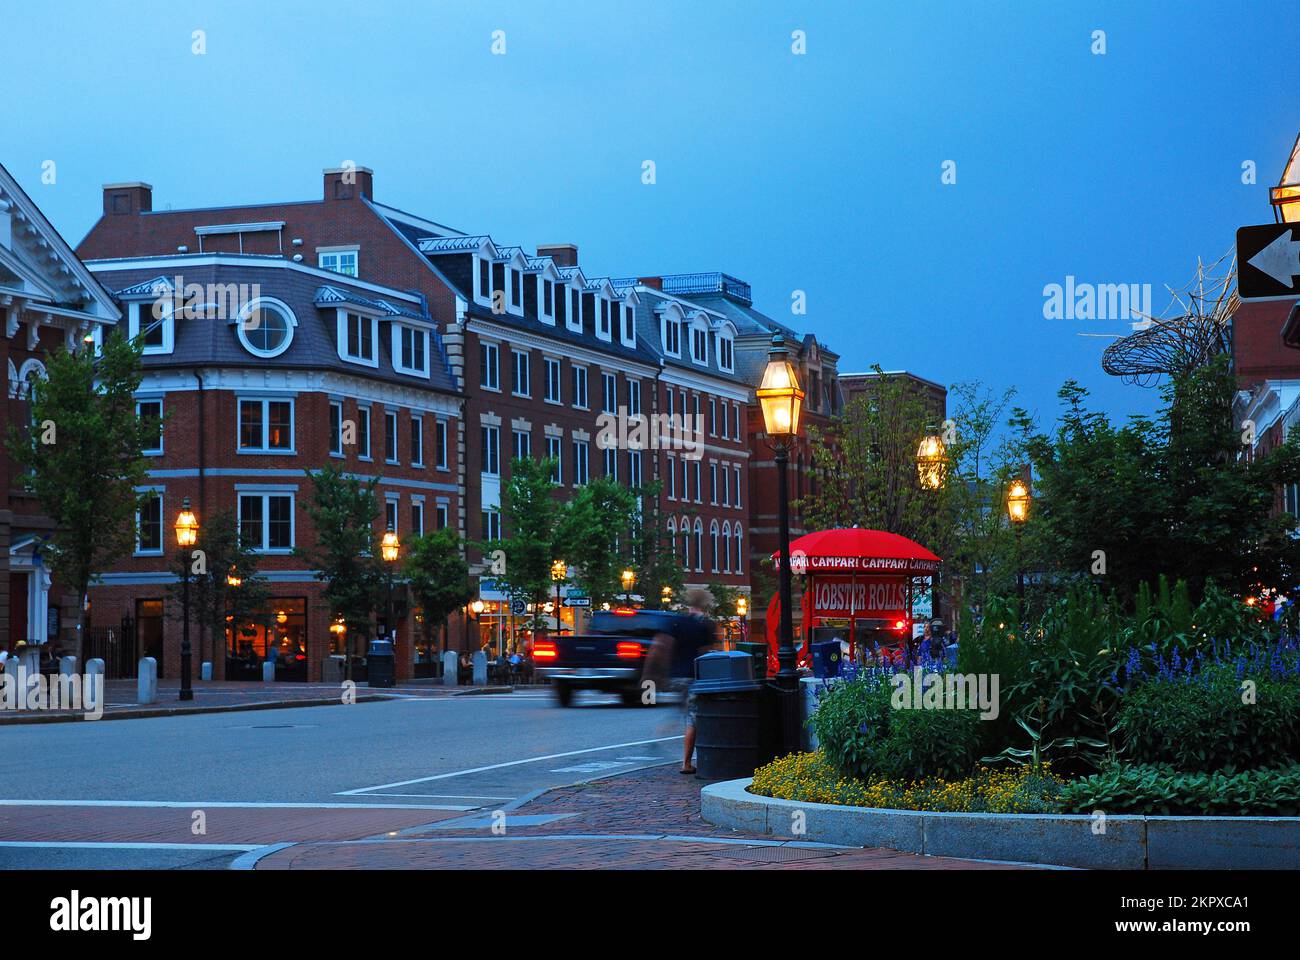 Las luces de las calles se encienden al anochecer, iluminando la tienda y los restaurantes del centro de Portsmouth, New Hampshire Foto de stock